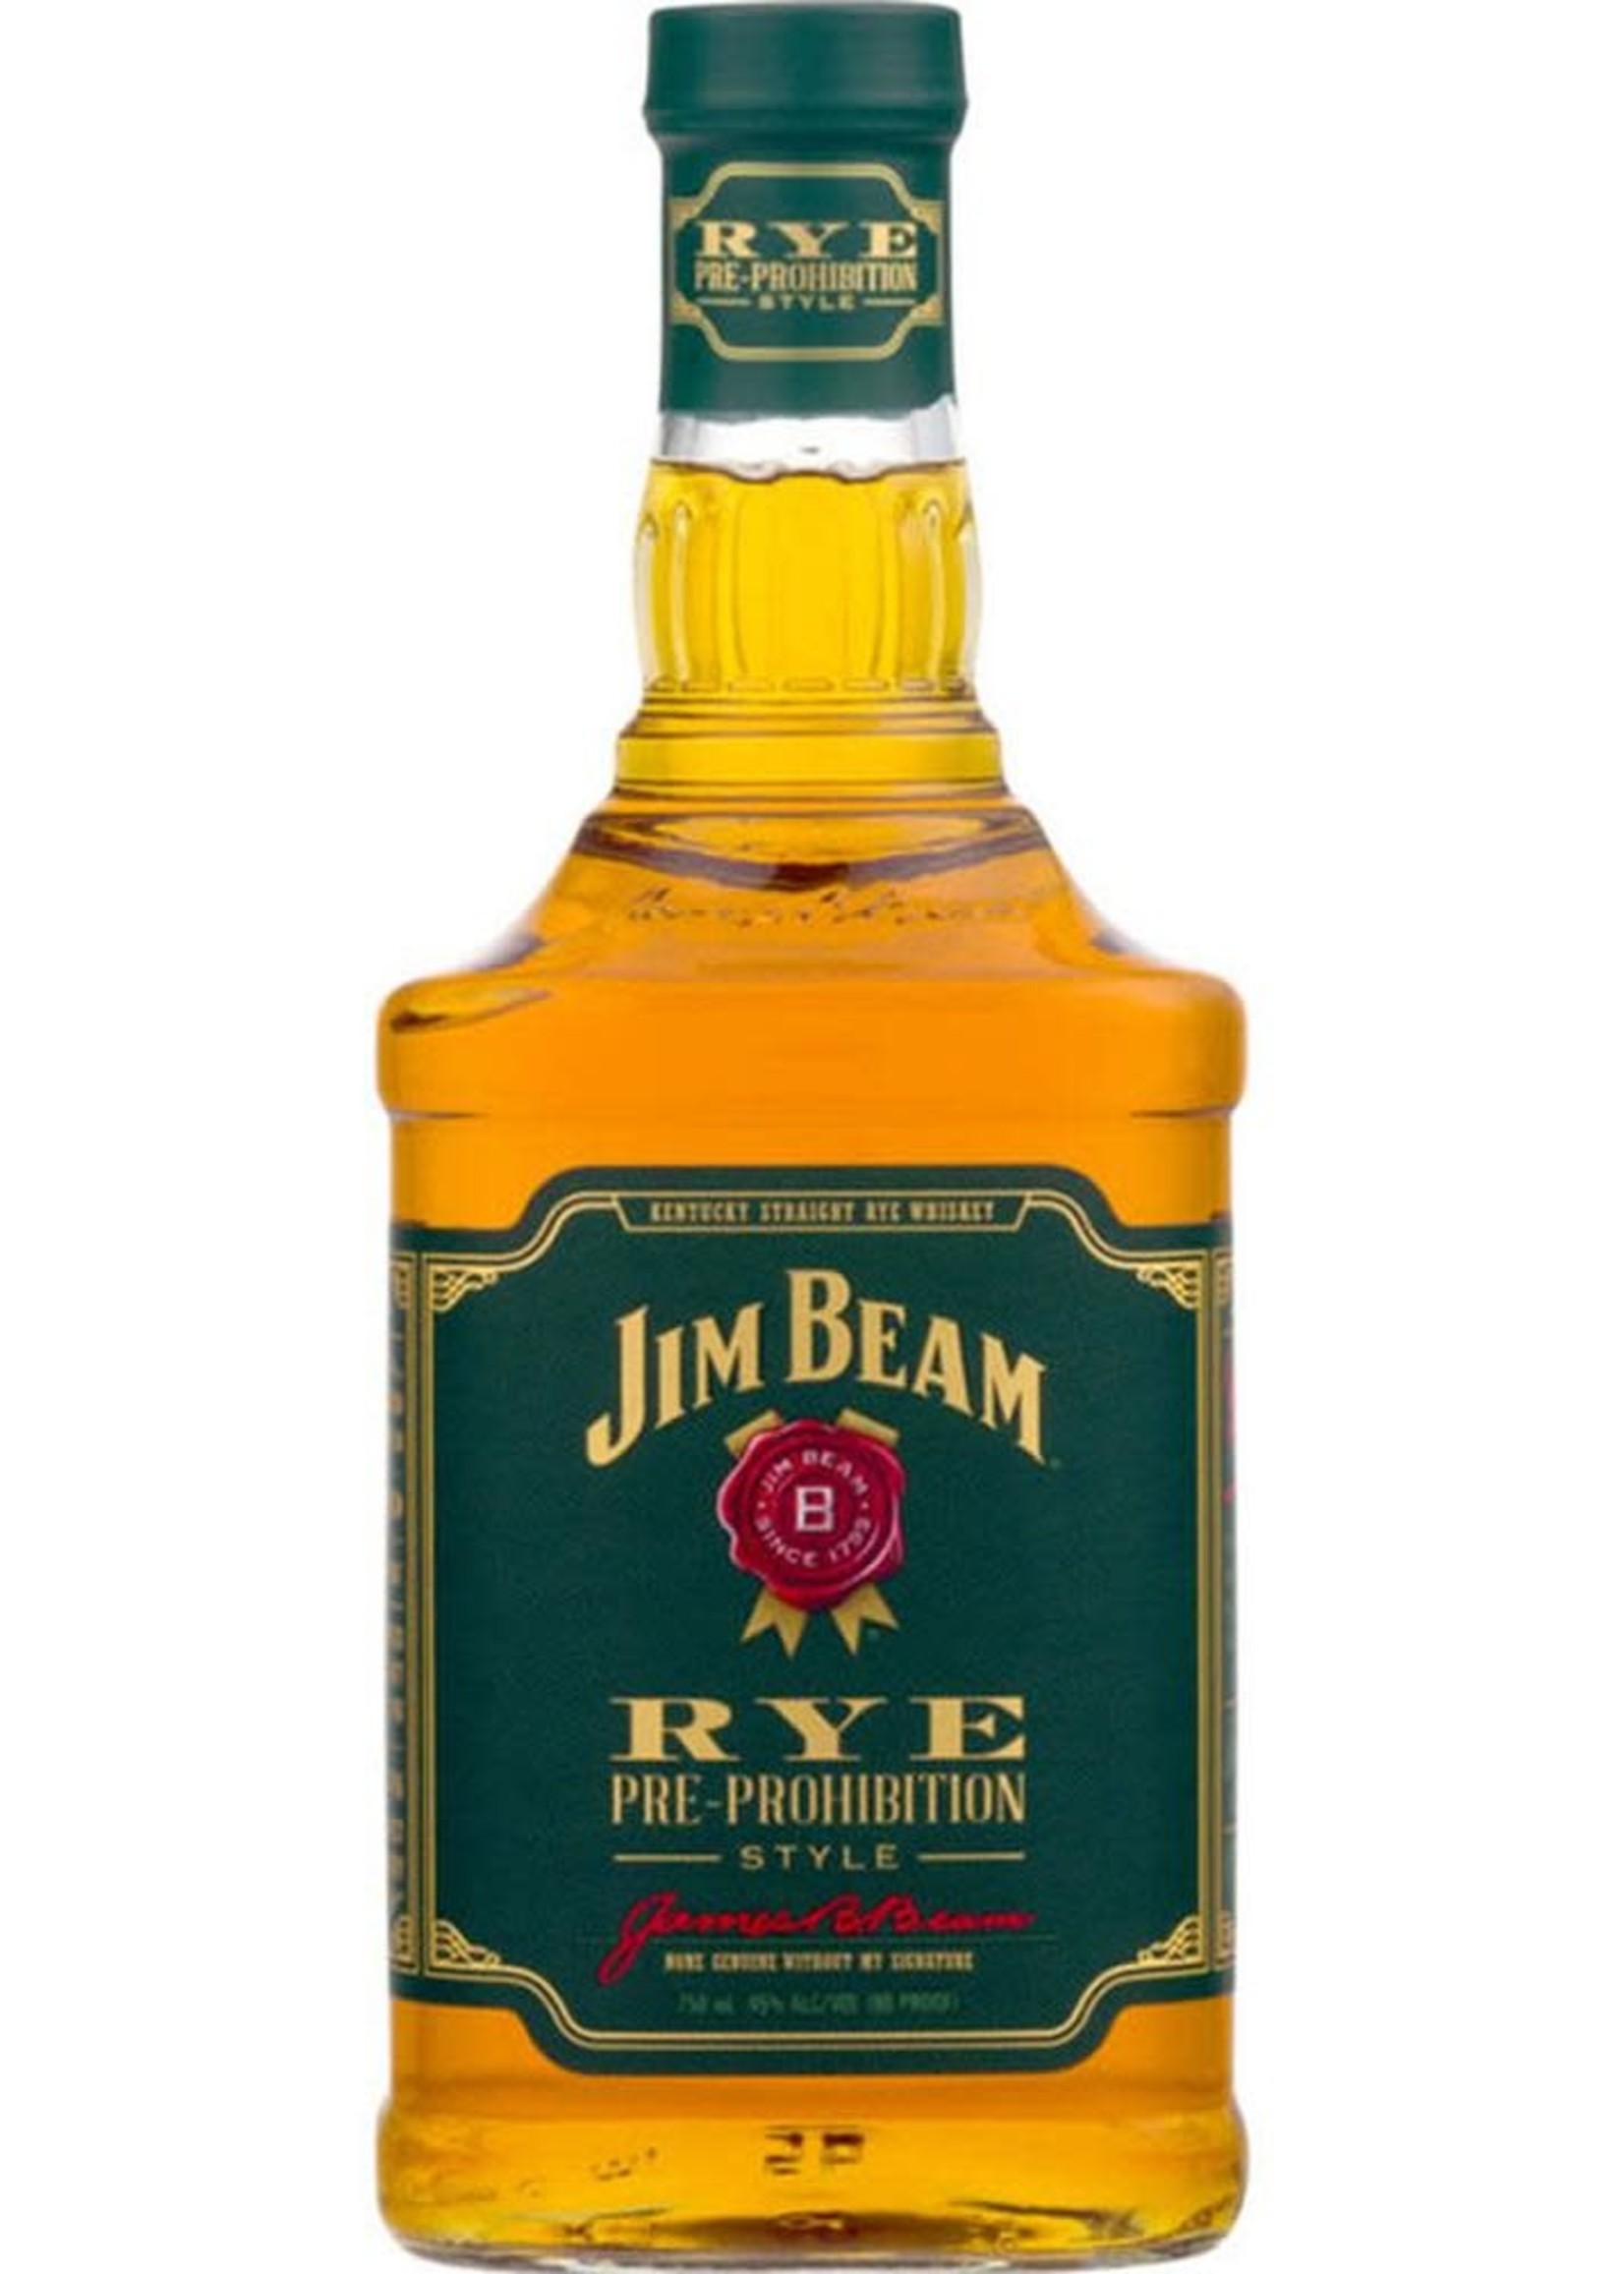 Jim Beam Jim Beam Rye